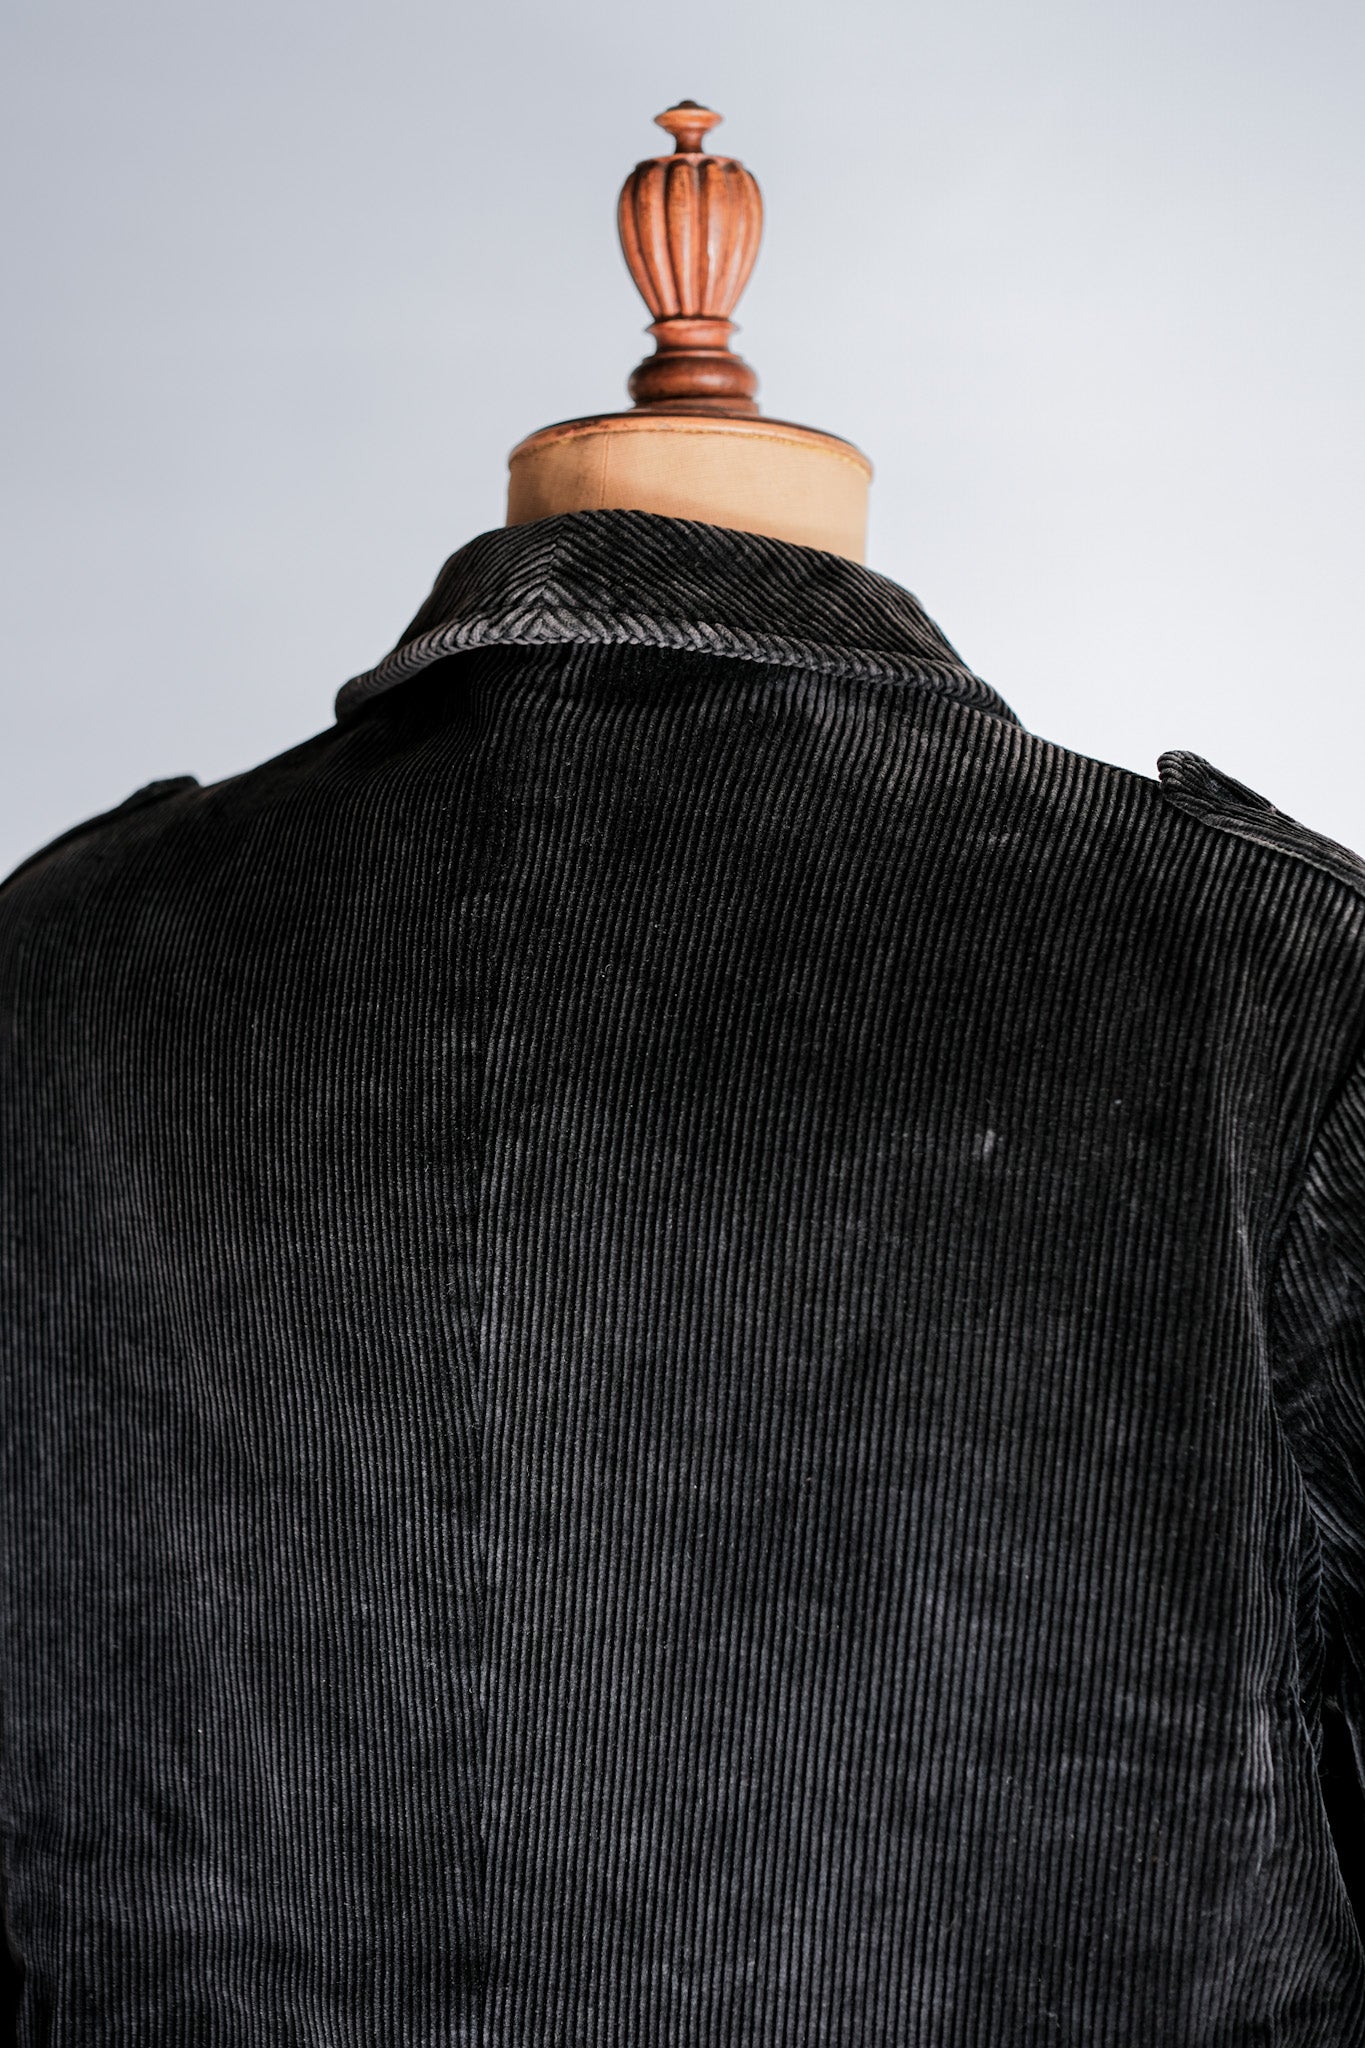 [〜60年代]法國復古黑色燈芯絨corse型狩獵夾克